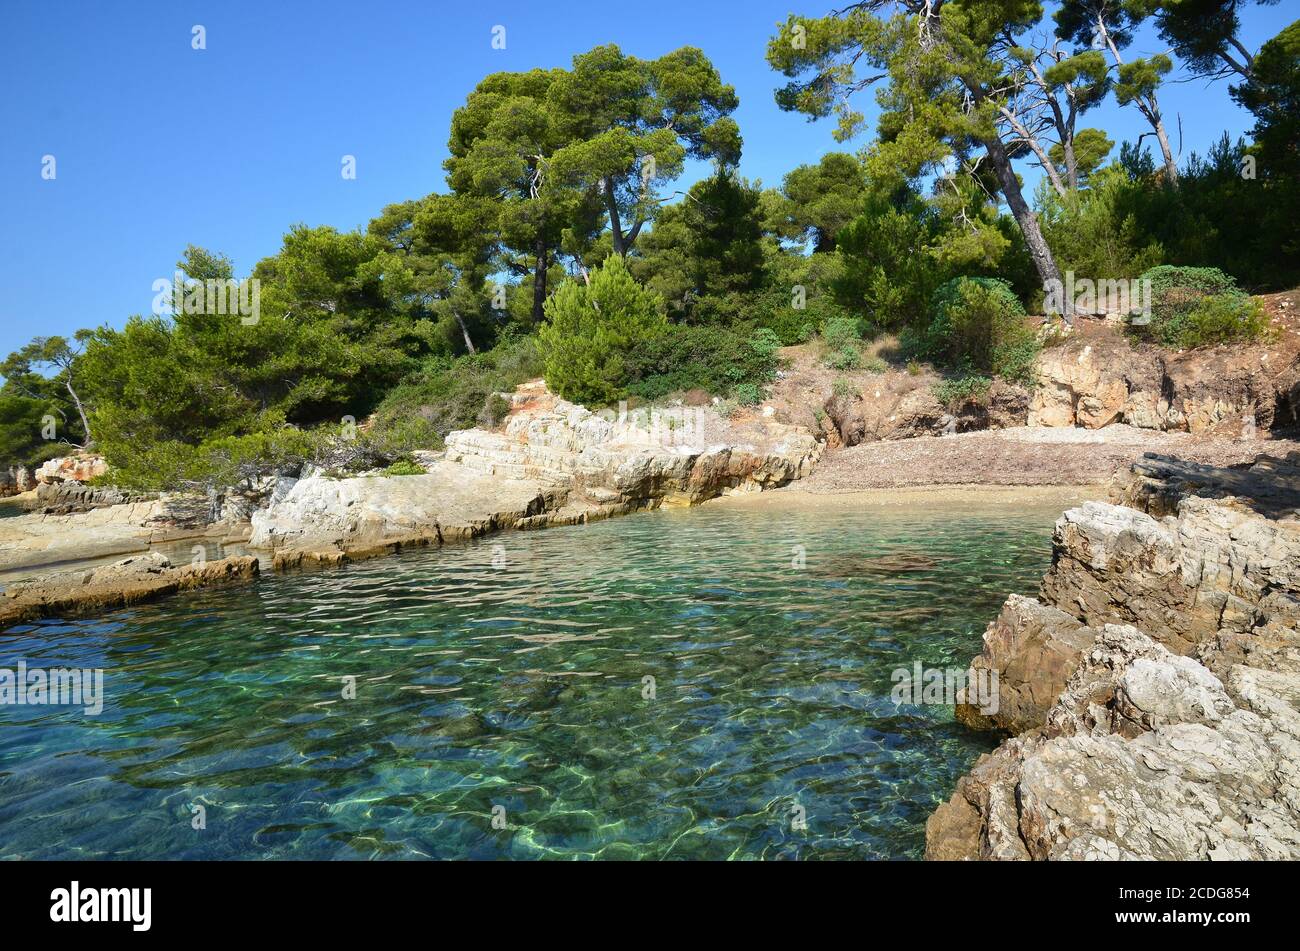 Francia, costa azzurra, baia di Cannes Isole Lerins una baia sull'isola di Sainte marguerite, questo sito naturale nel mar mediterraneo è molto protetto. Foto Stock